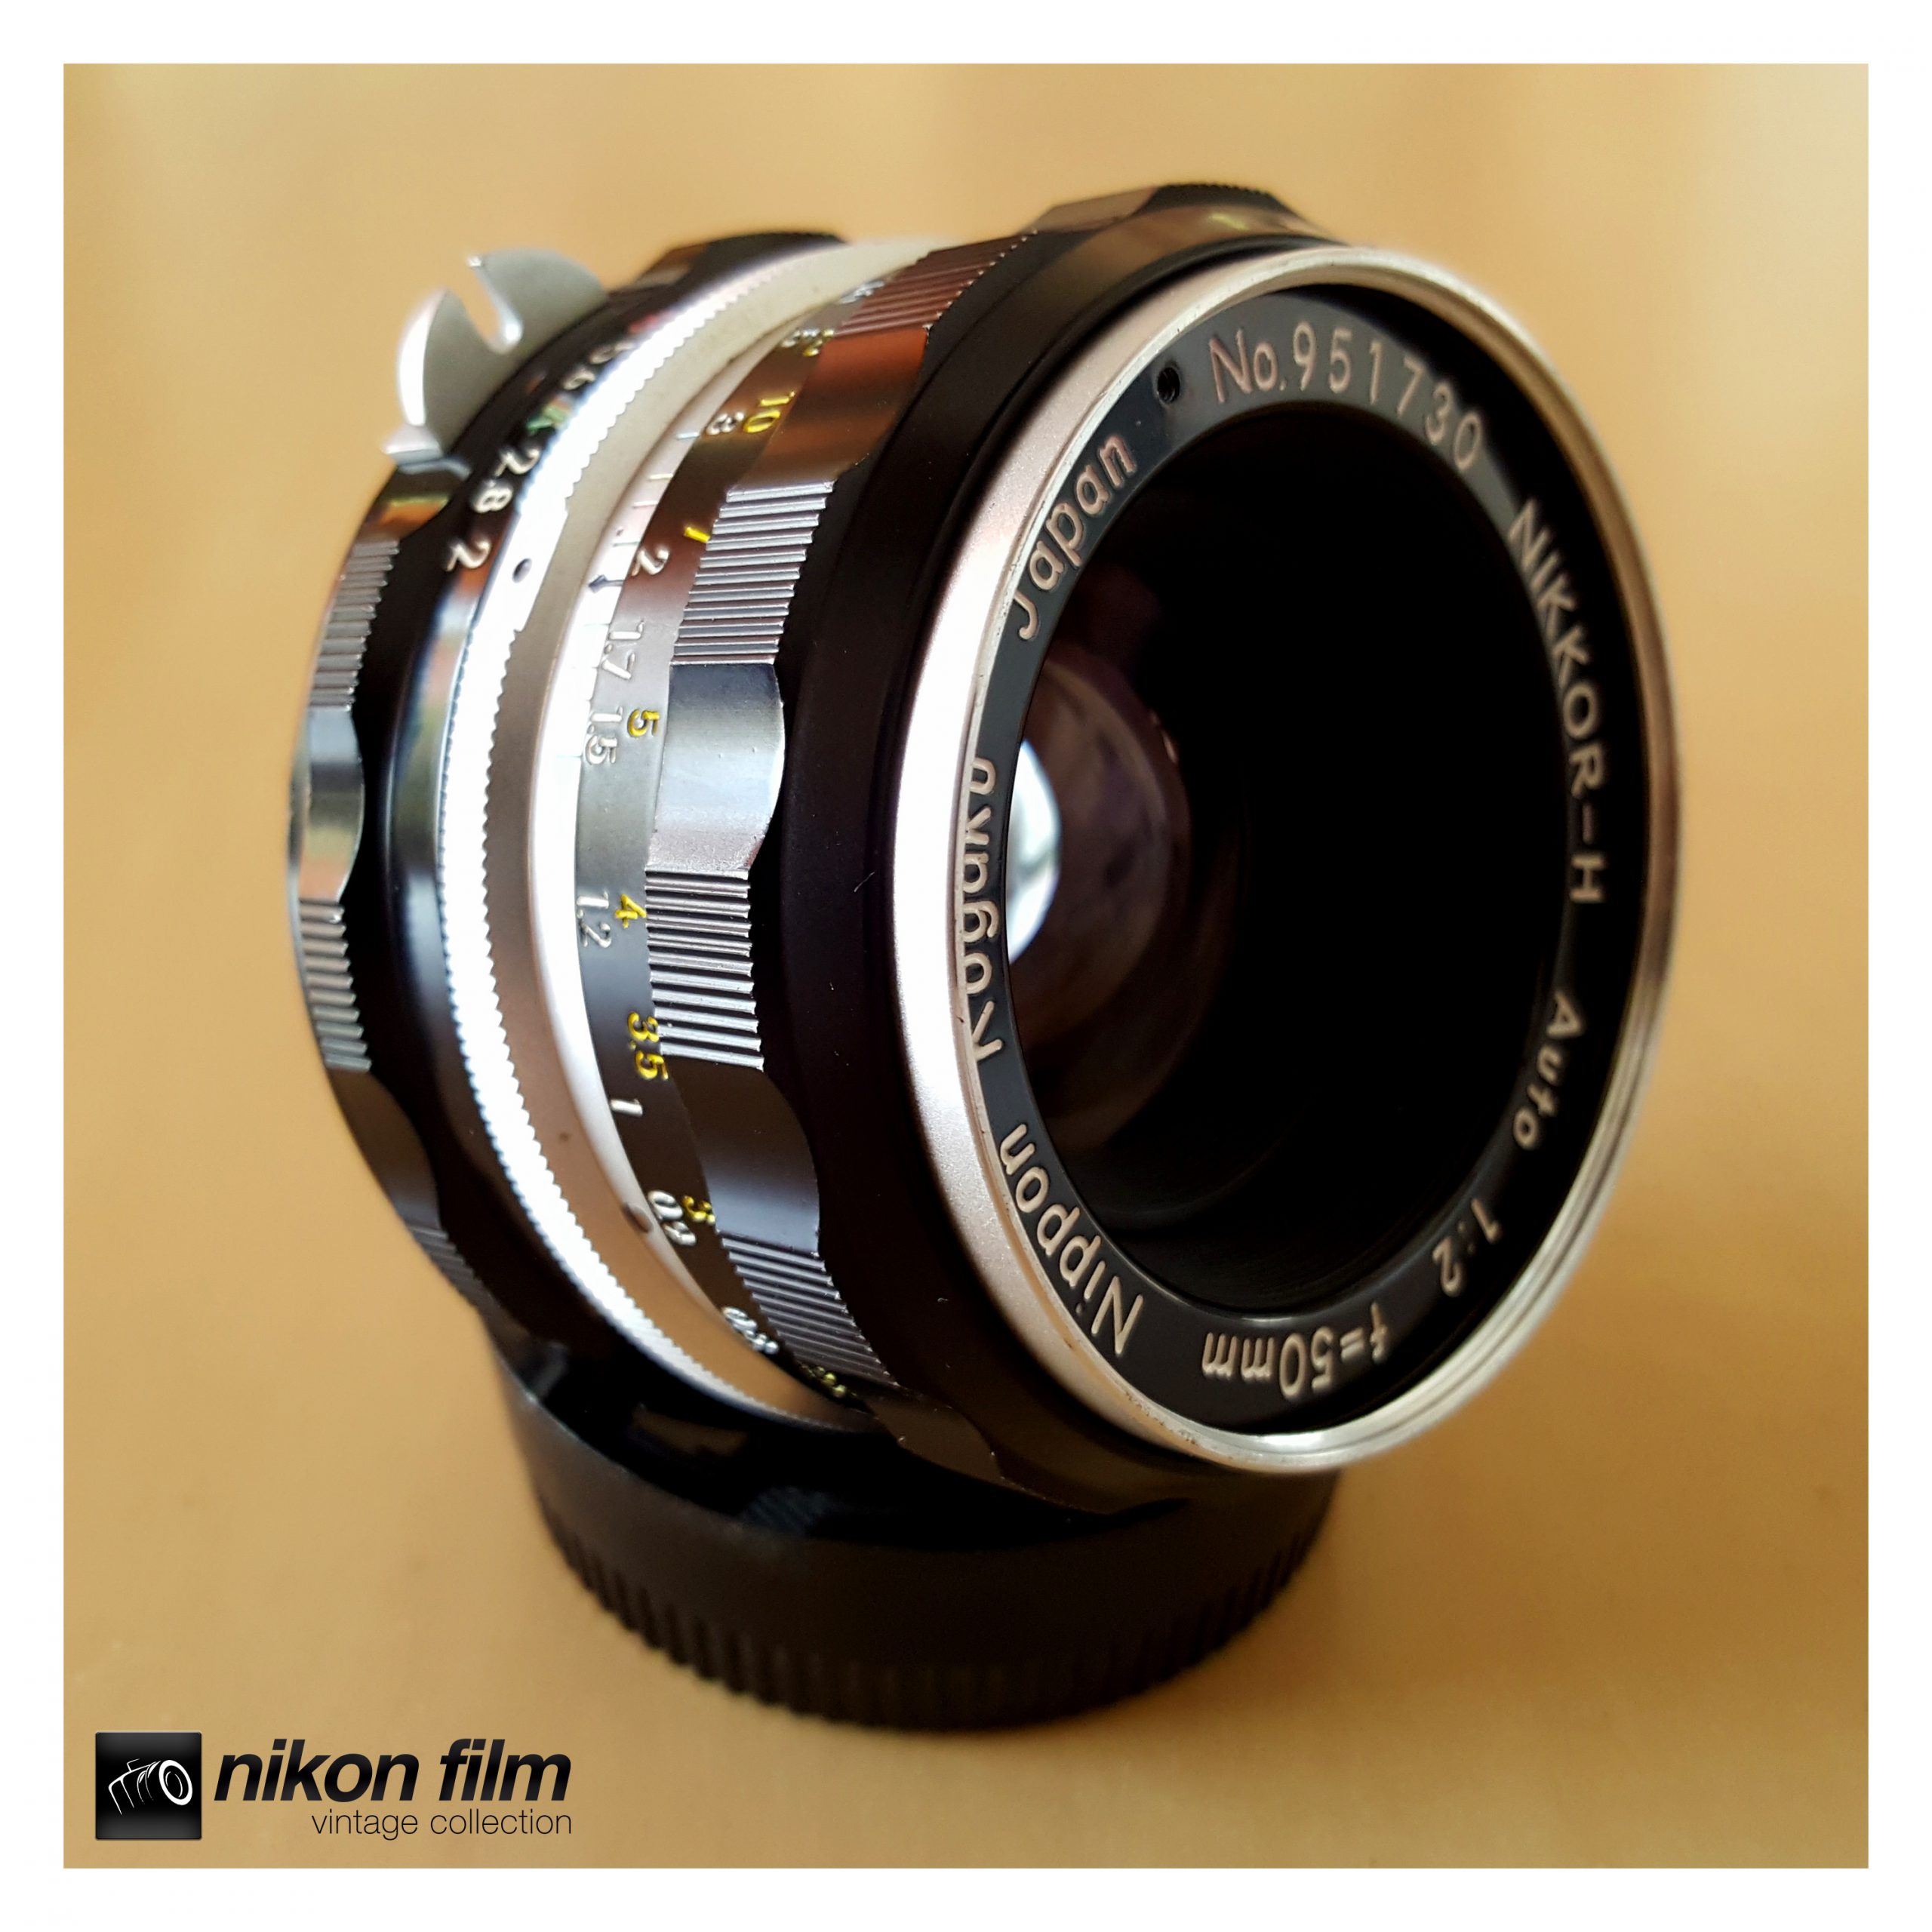 Nikon 50mm f/2 Review